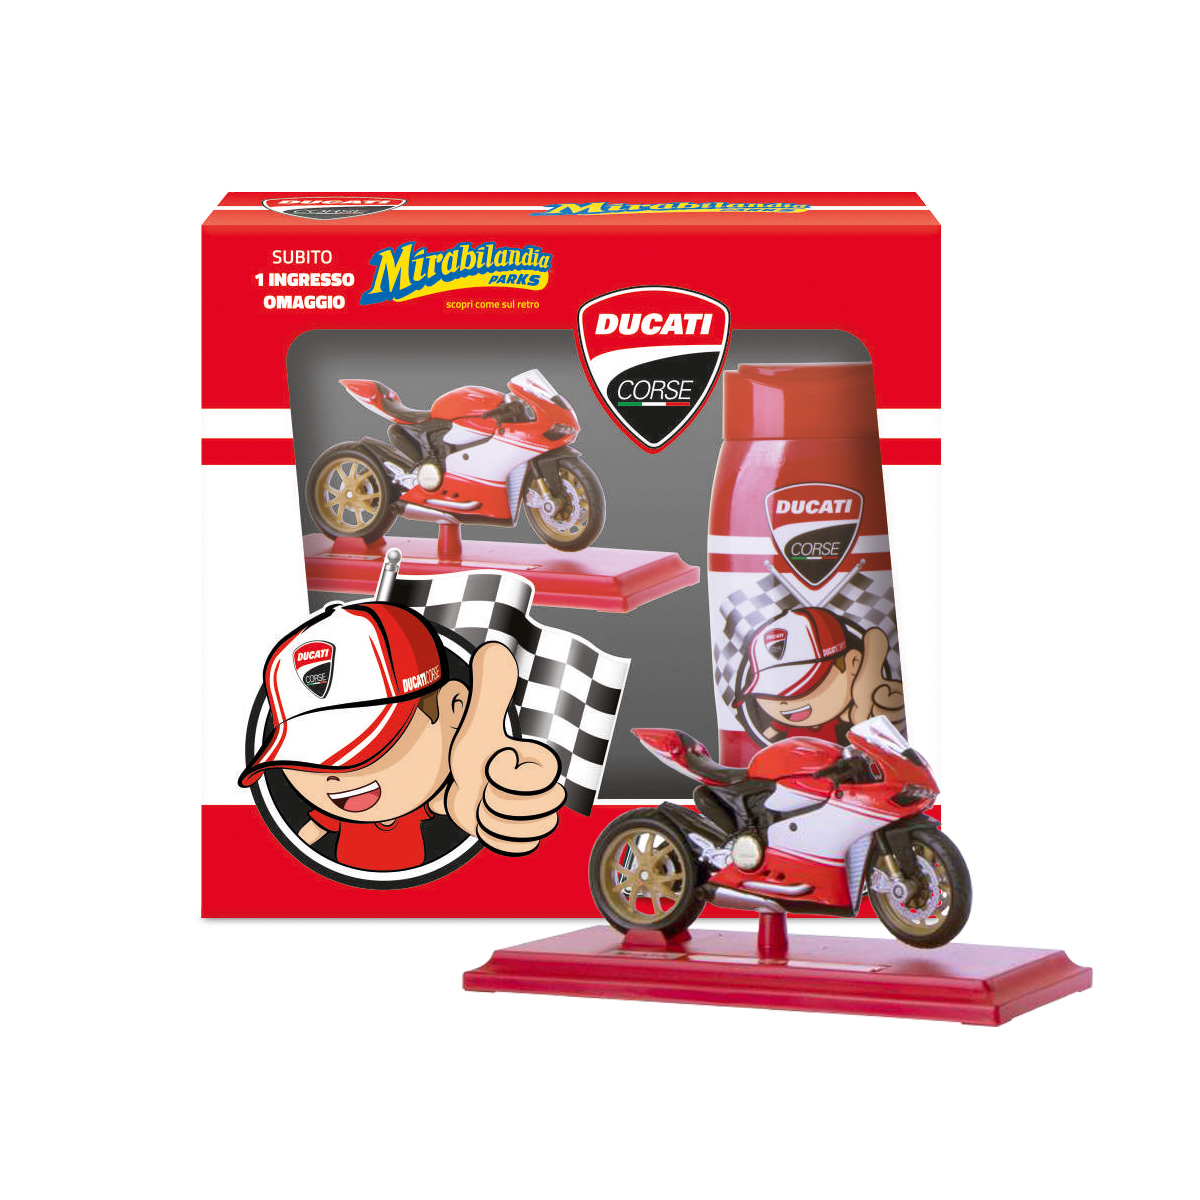 Shampoo e Shower Ducati Kids con Original Replica Model Ducati Superleggera